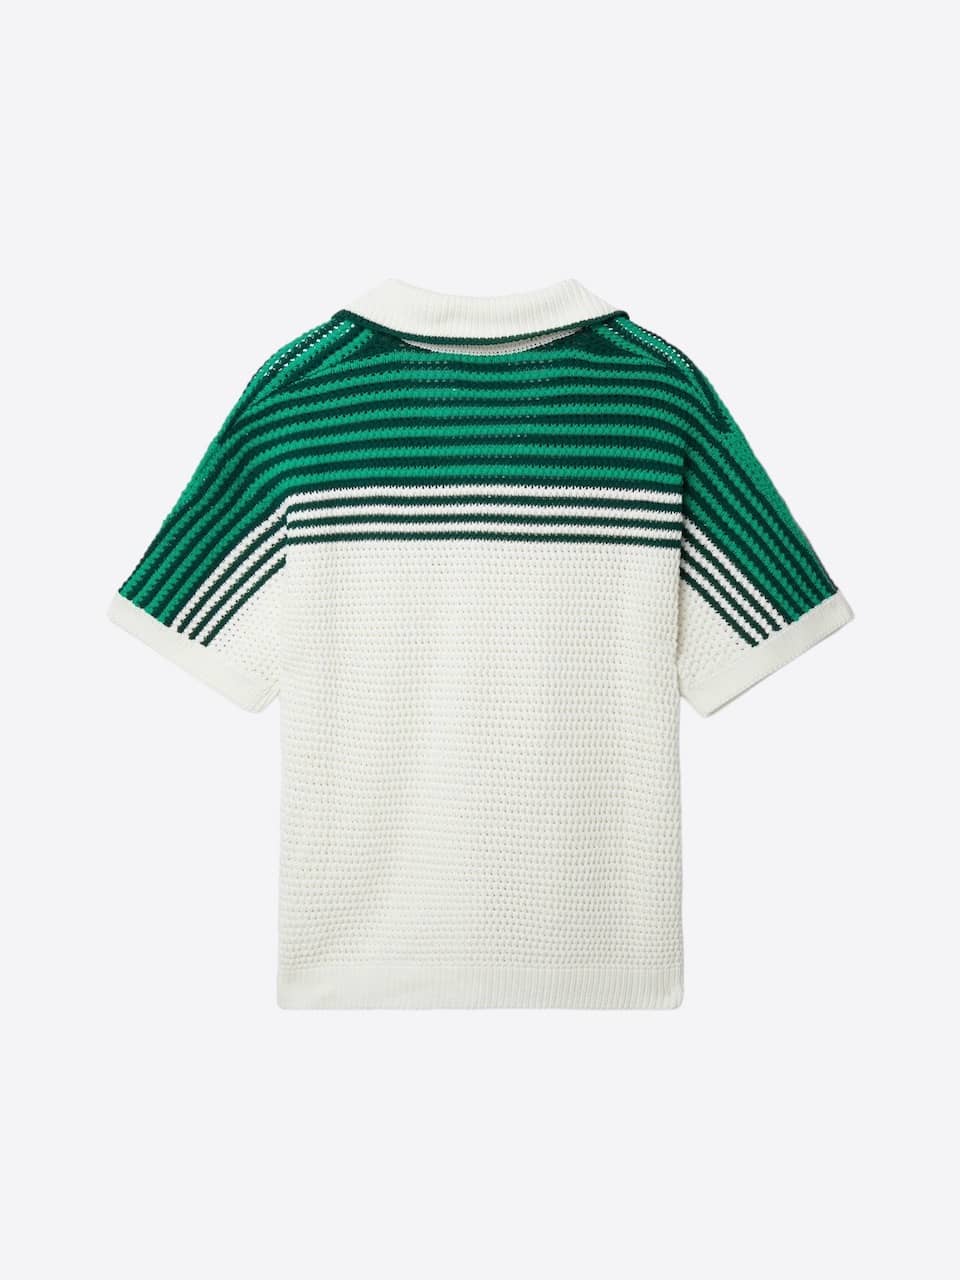 Casablanca Tennis Crochet Shirt